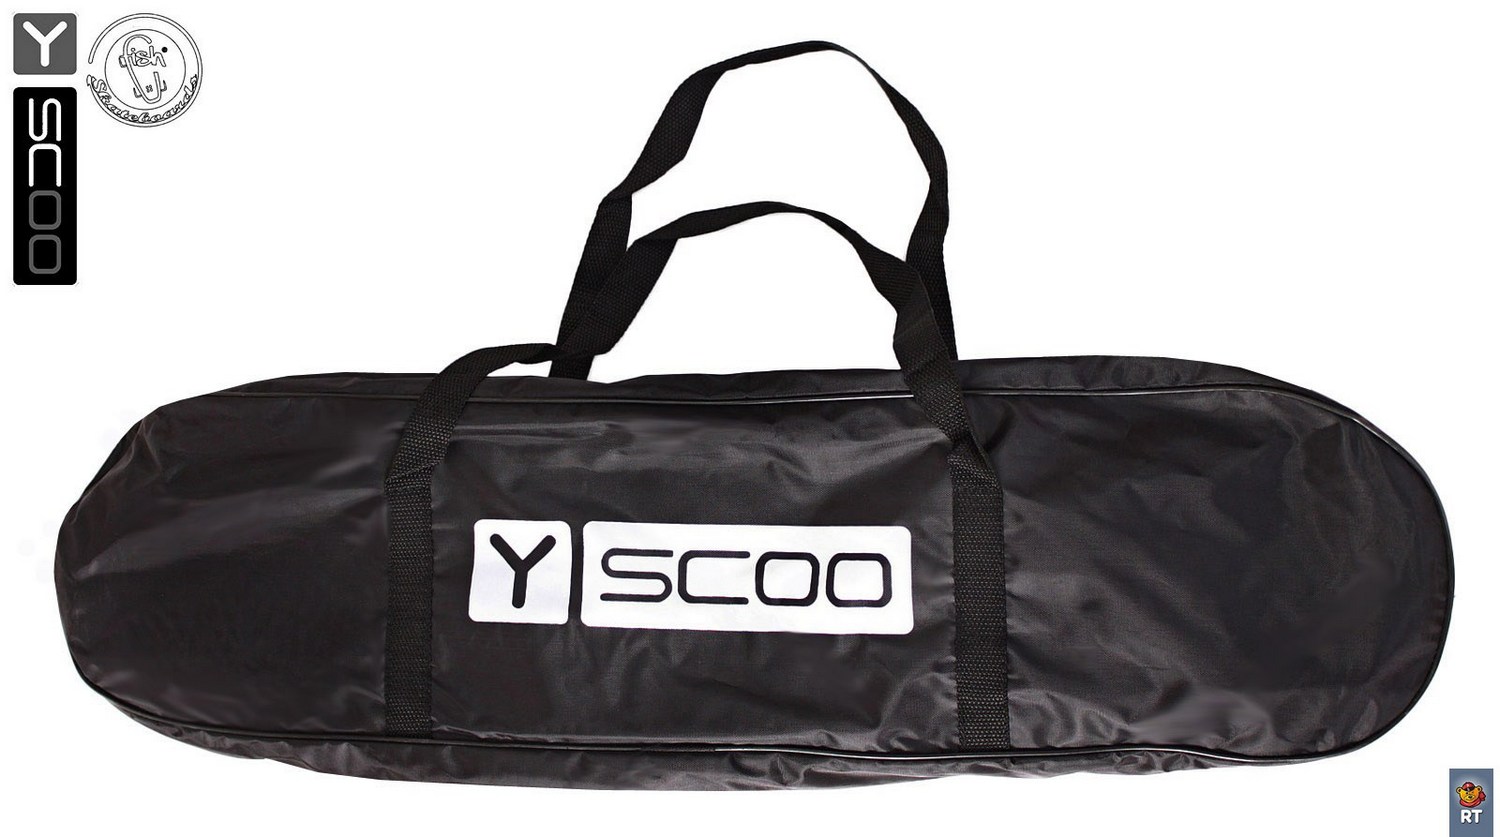 Скейтборд виниловый Y-Scoo Big Fishskateboard 27" 402-P с сумкой, розовый  